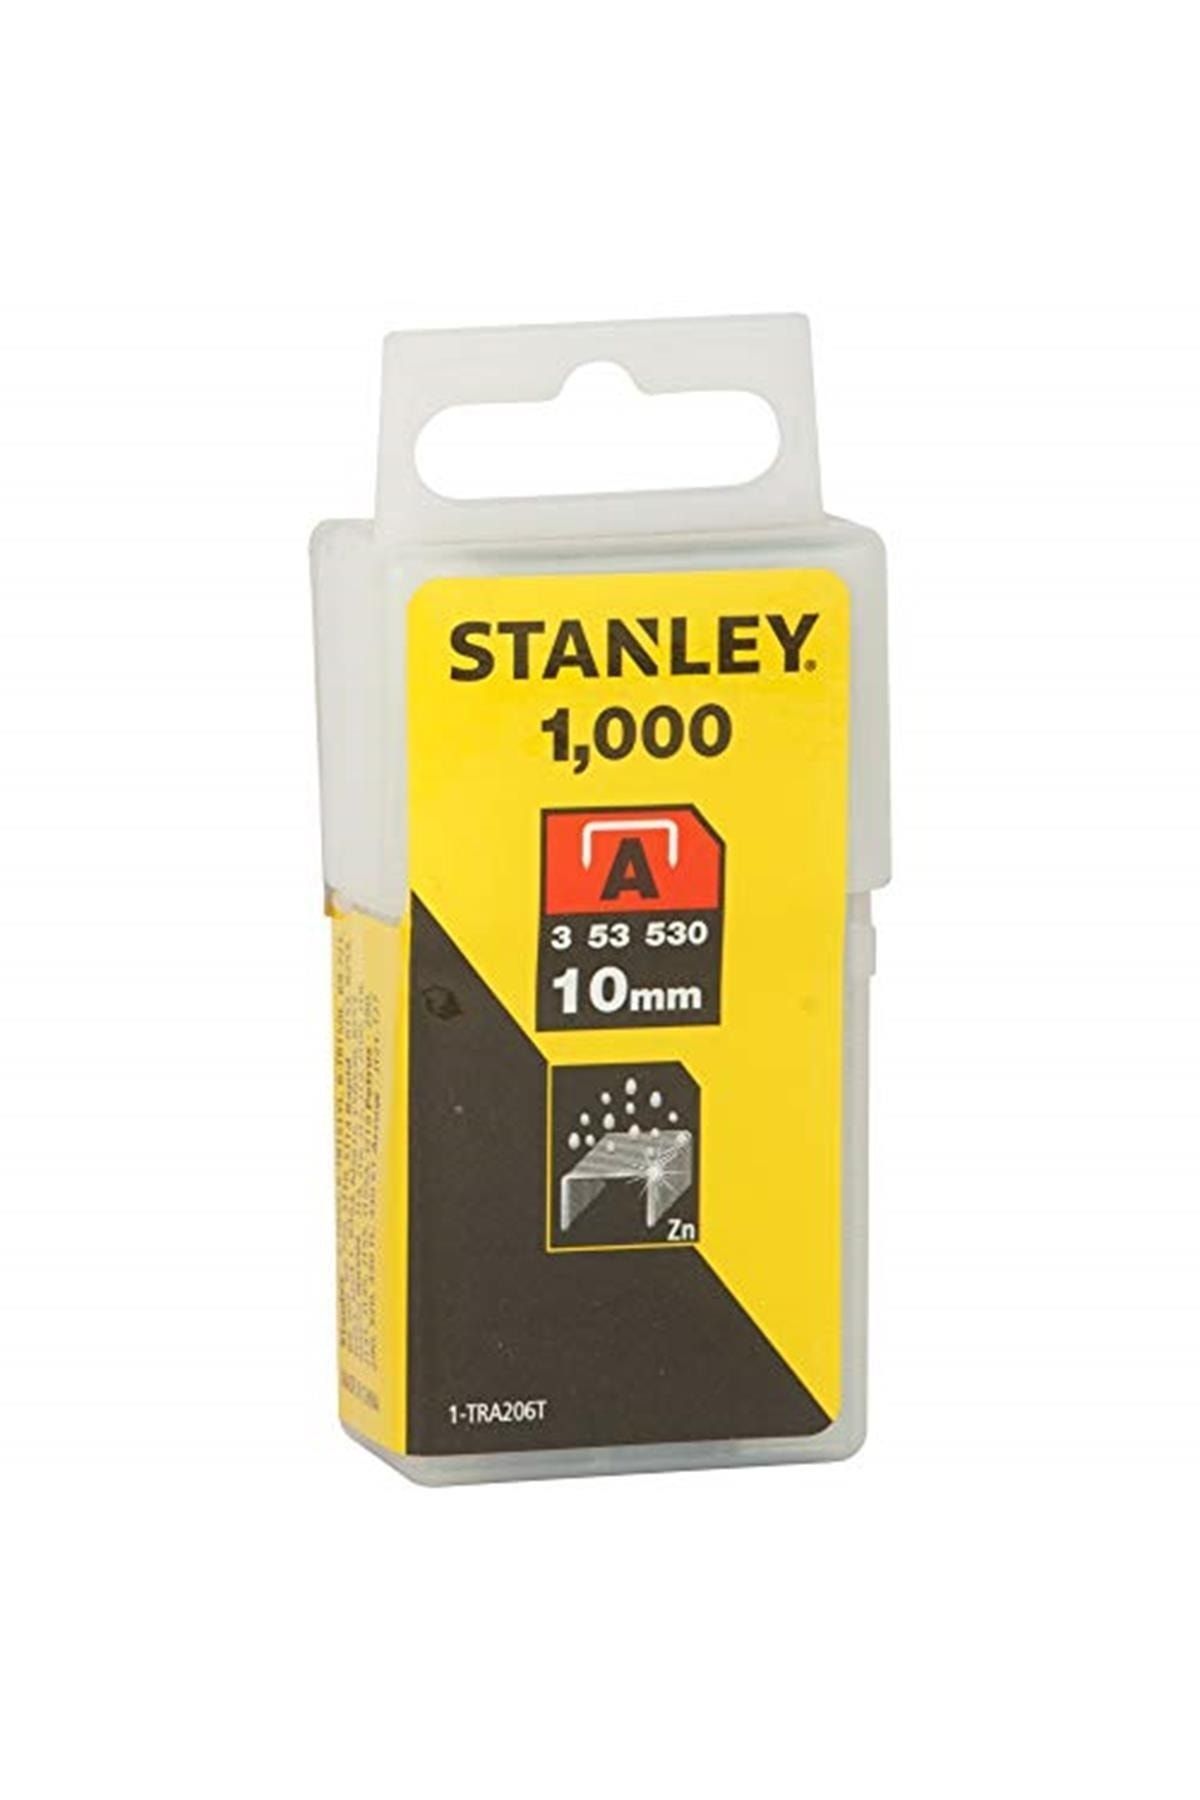 Stanley 1-tra206t Zımba Teli, Sarı/siyah, 10mm